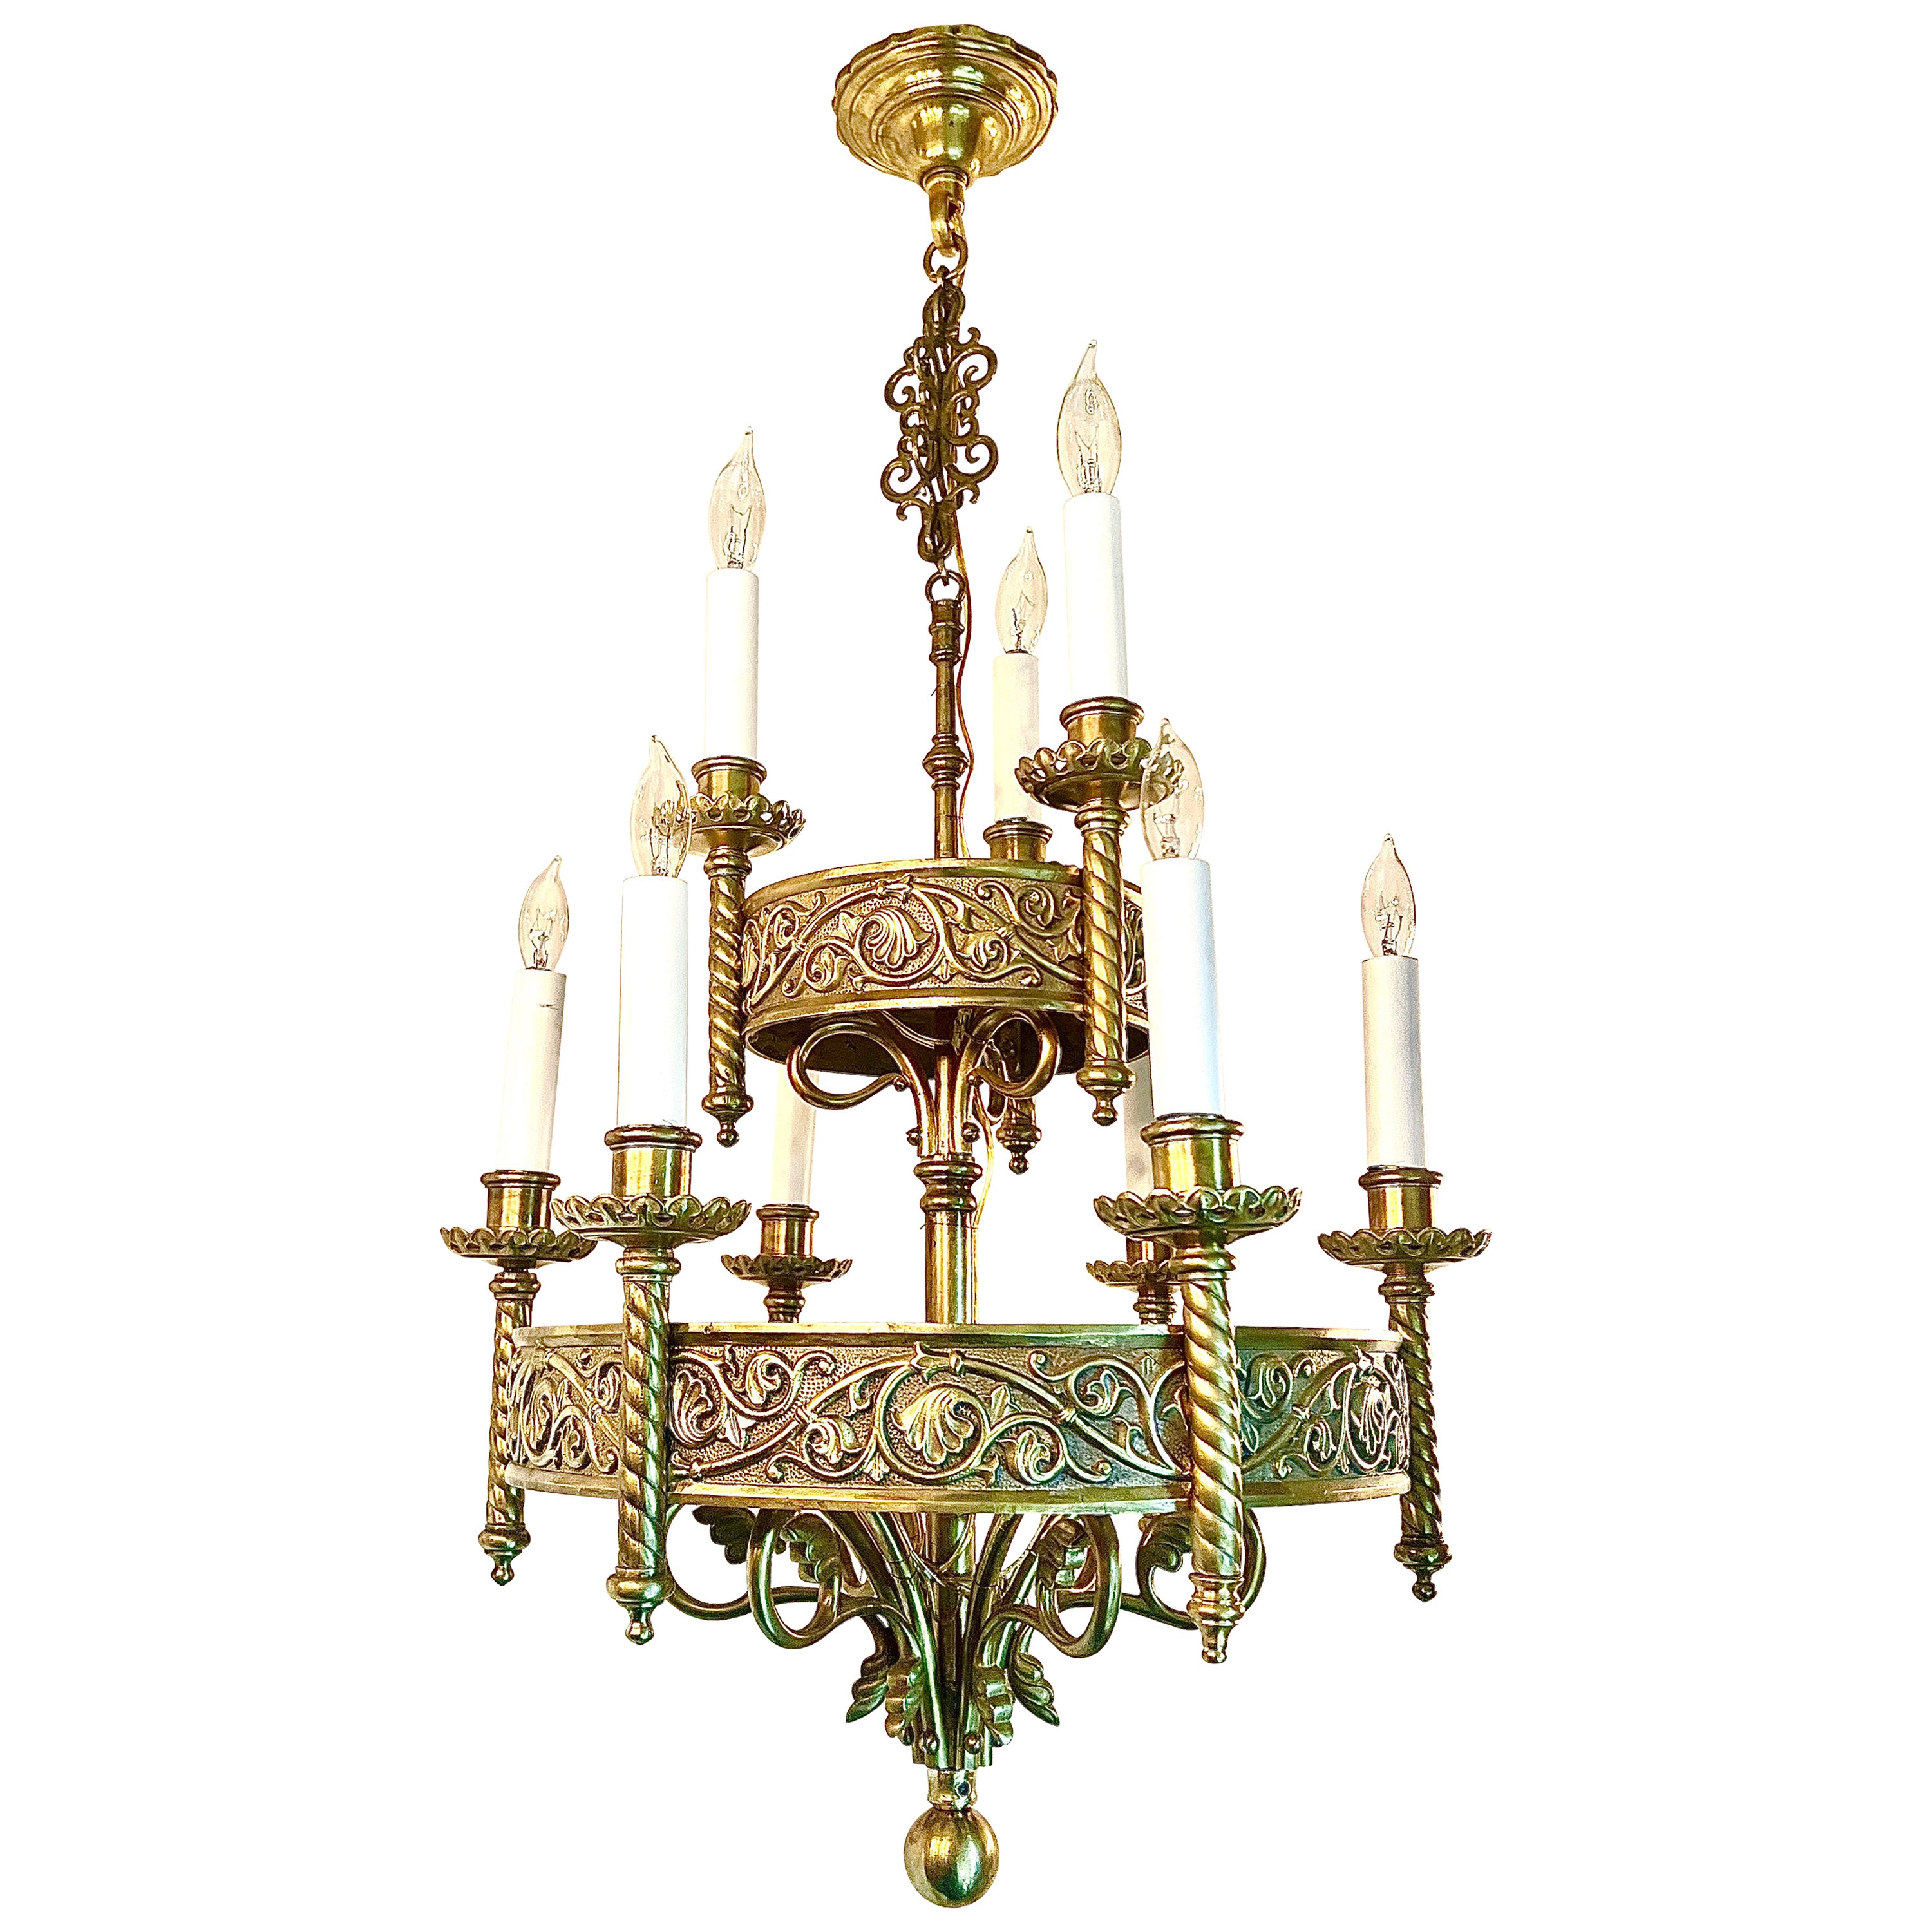 Antique French Renaissance Revival Gold Bronze 9 Light Chandelier, Circa 1910's. For Sale